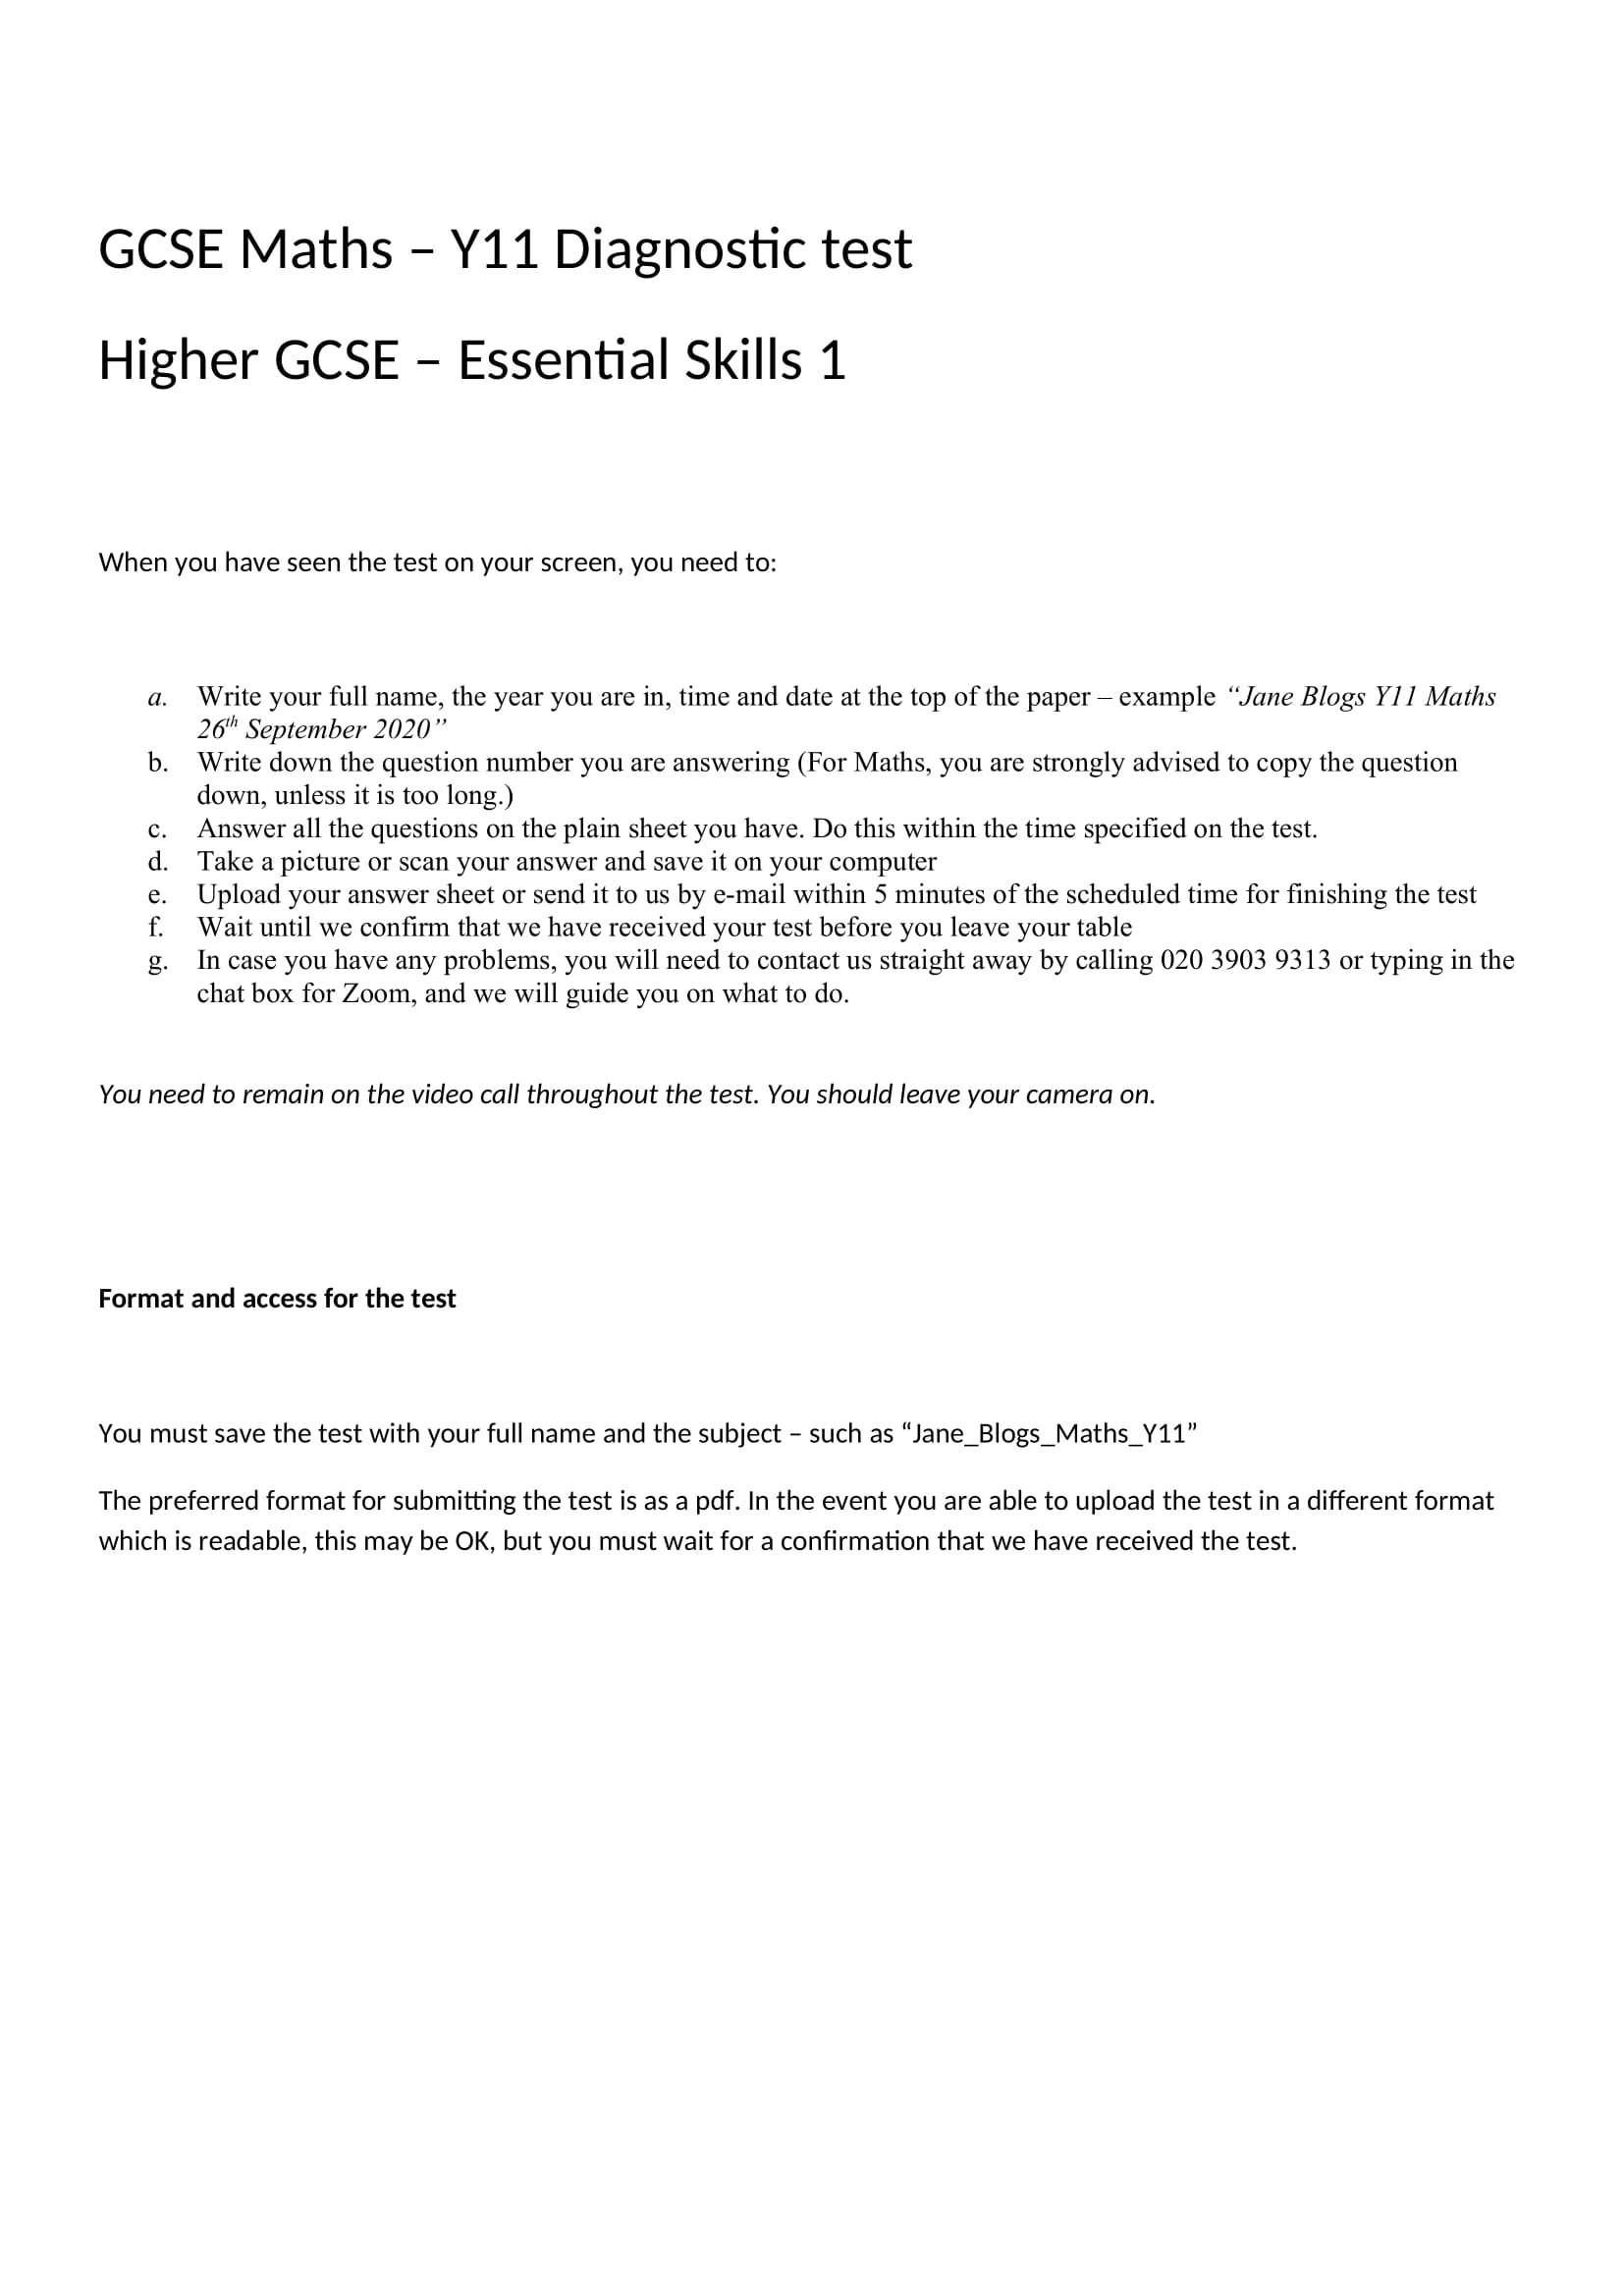 GCSE_Maths_Y11_Higher_Test_2021-1